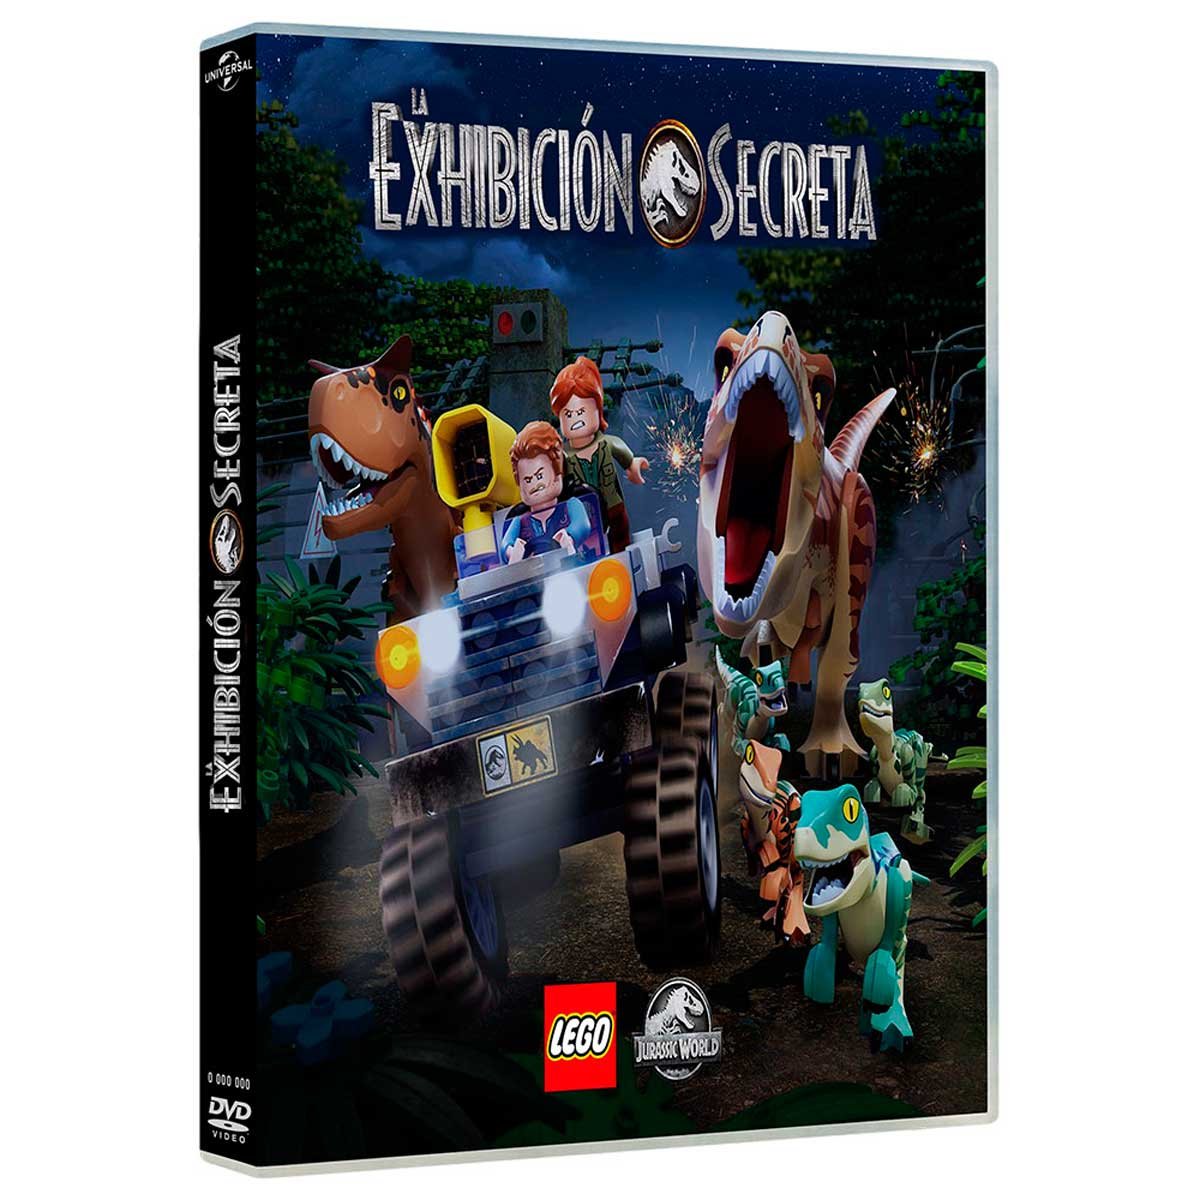 Dvd Lego Jurassic World la Exhibicion Secreta